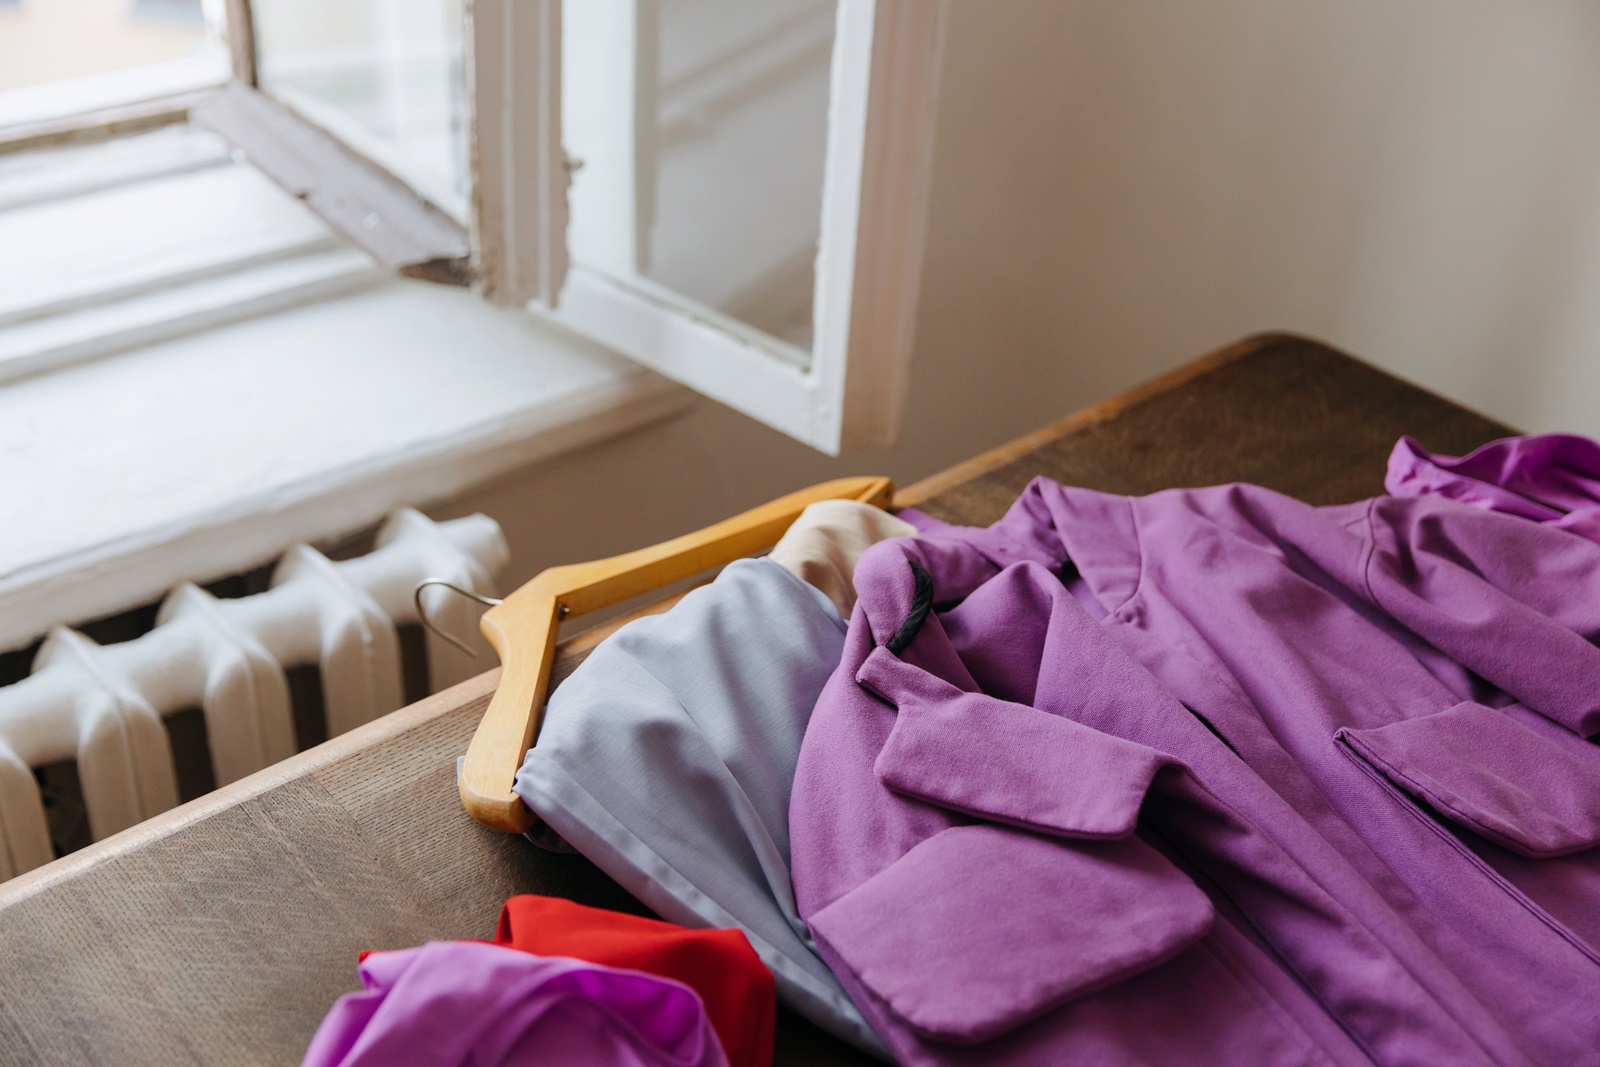 Τακτοποίηση ρούχων σε ντουλάπα: Κάντε το με τρόπο